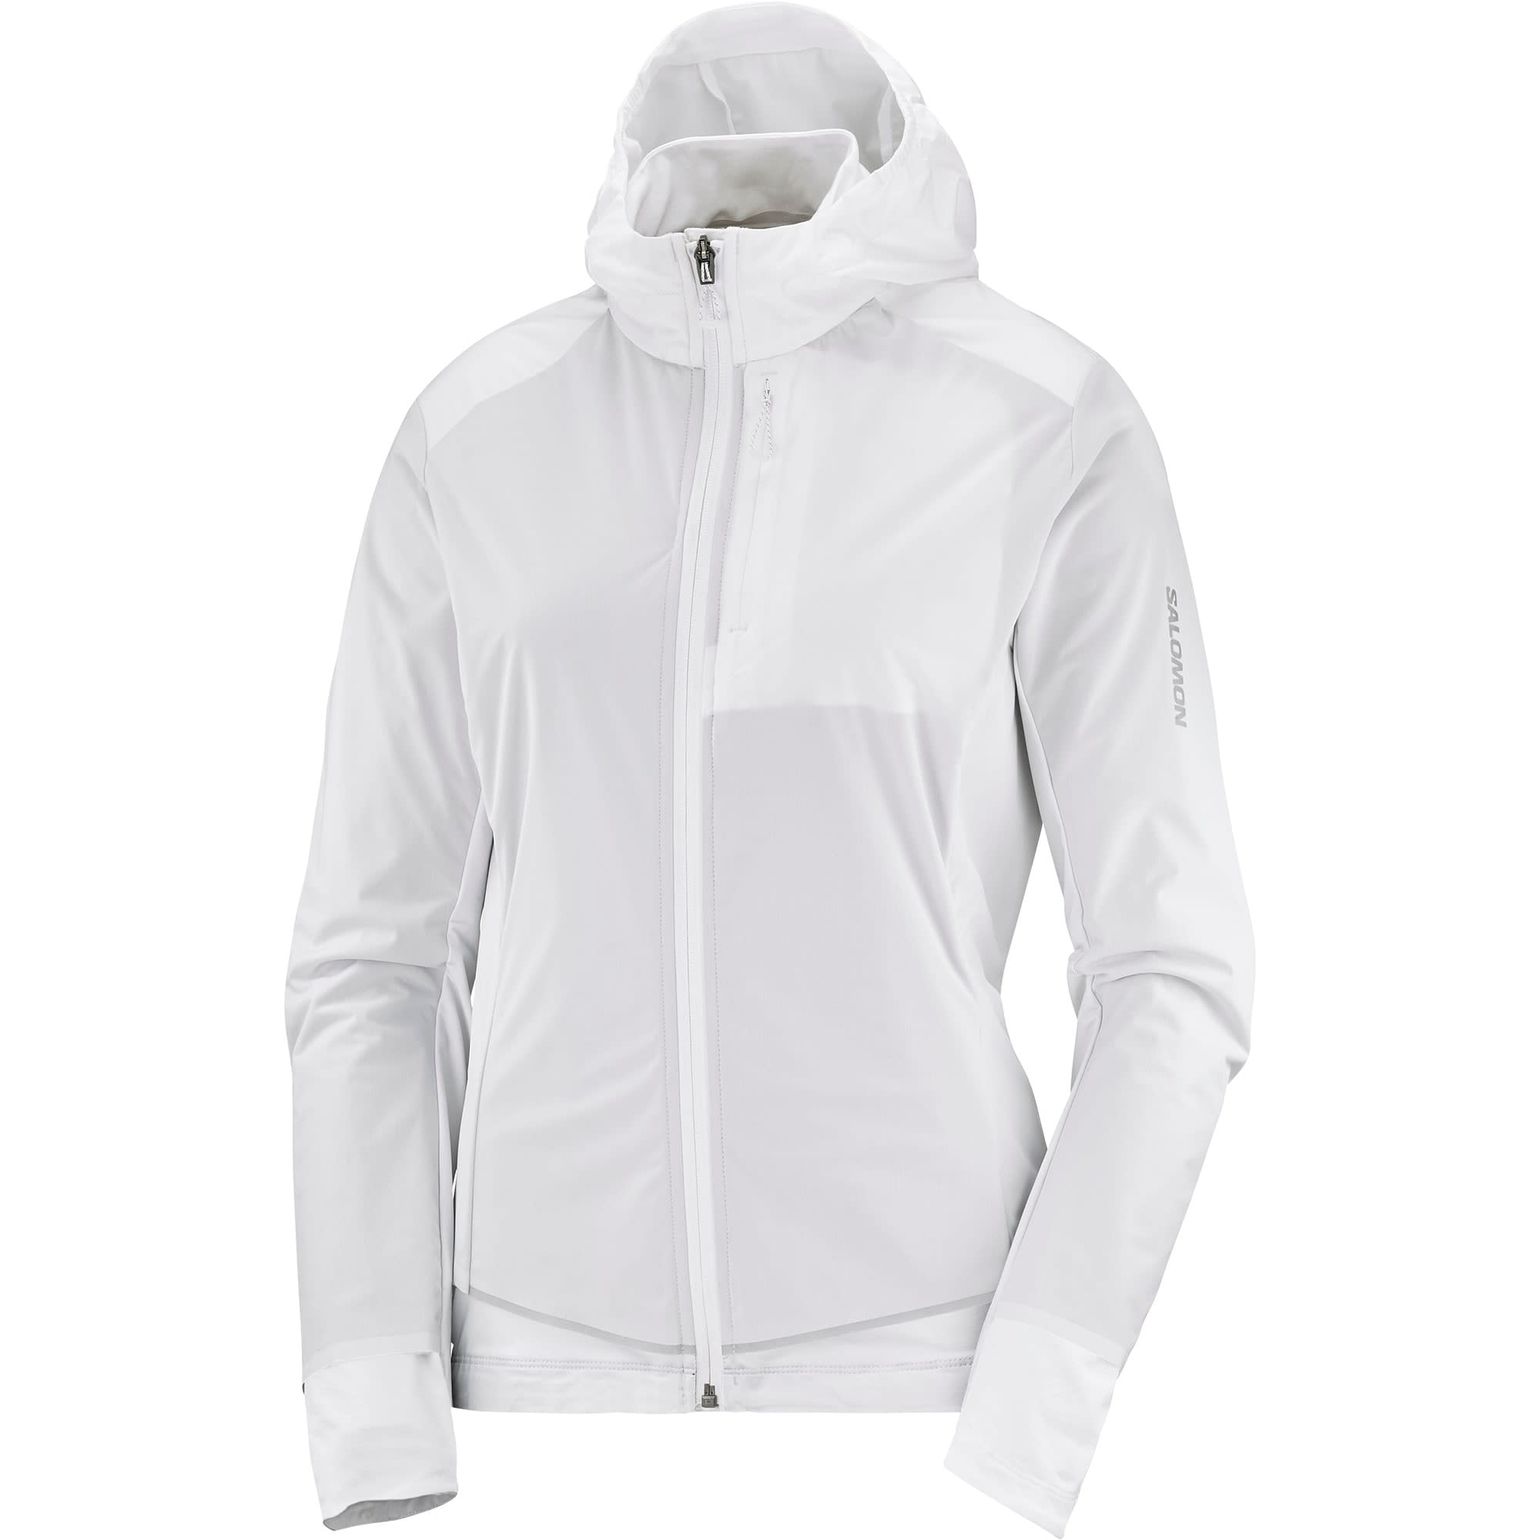 Salomon Women's Light Shell Jacket WHITE/